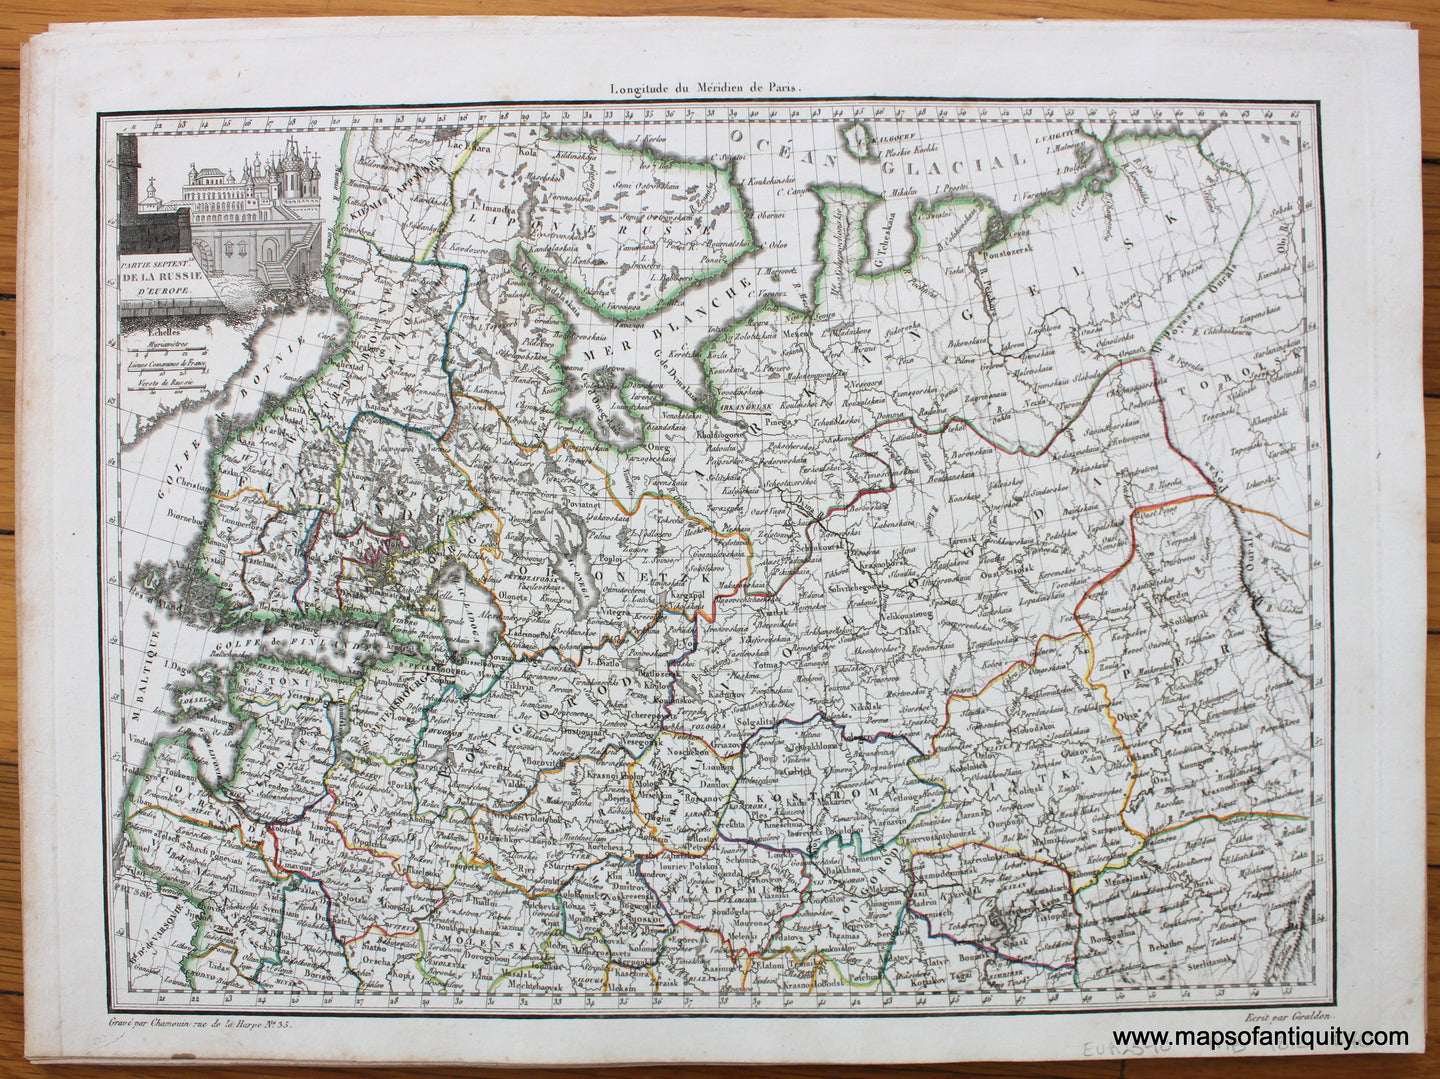 Antique-Hand-Colored-Map-Partie-Septent.le-de-la-Russie-d'-Europe-1812-Malte-Brun-Lapie-Russia-1800s-19th-century-Maps-of-Antiquity